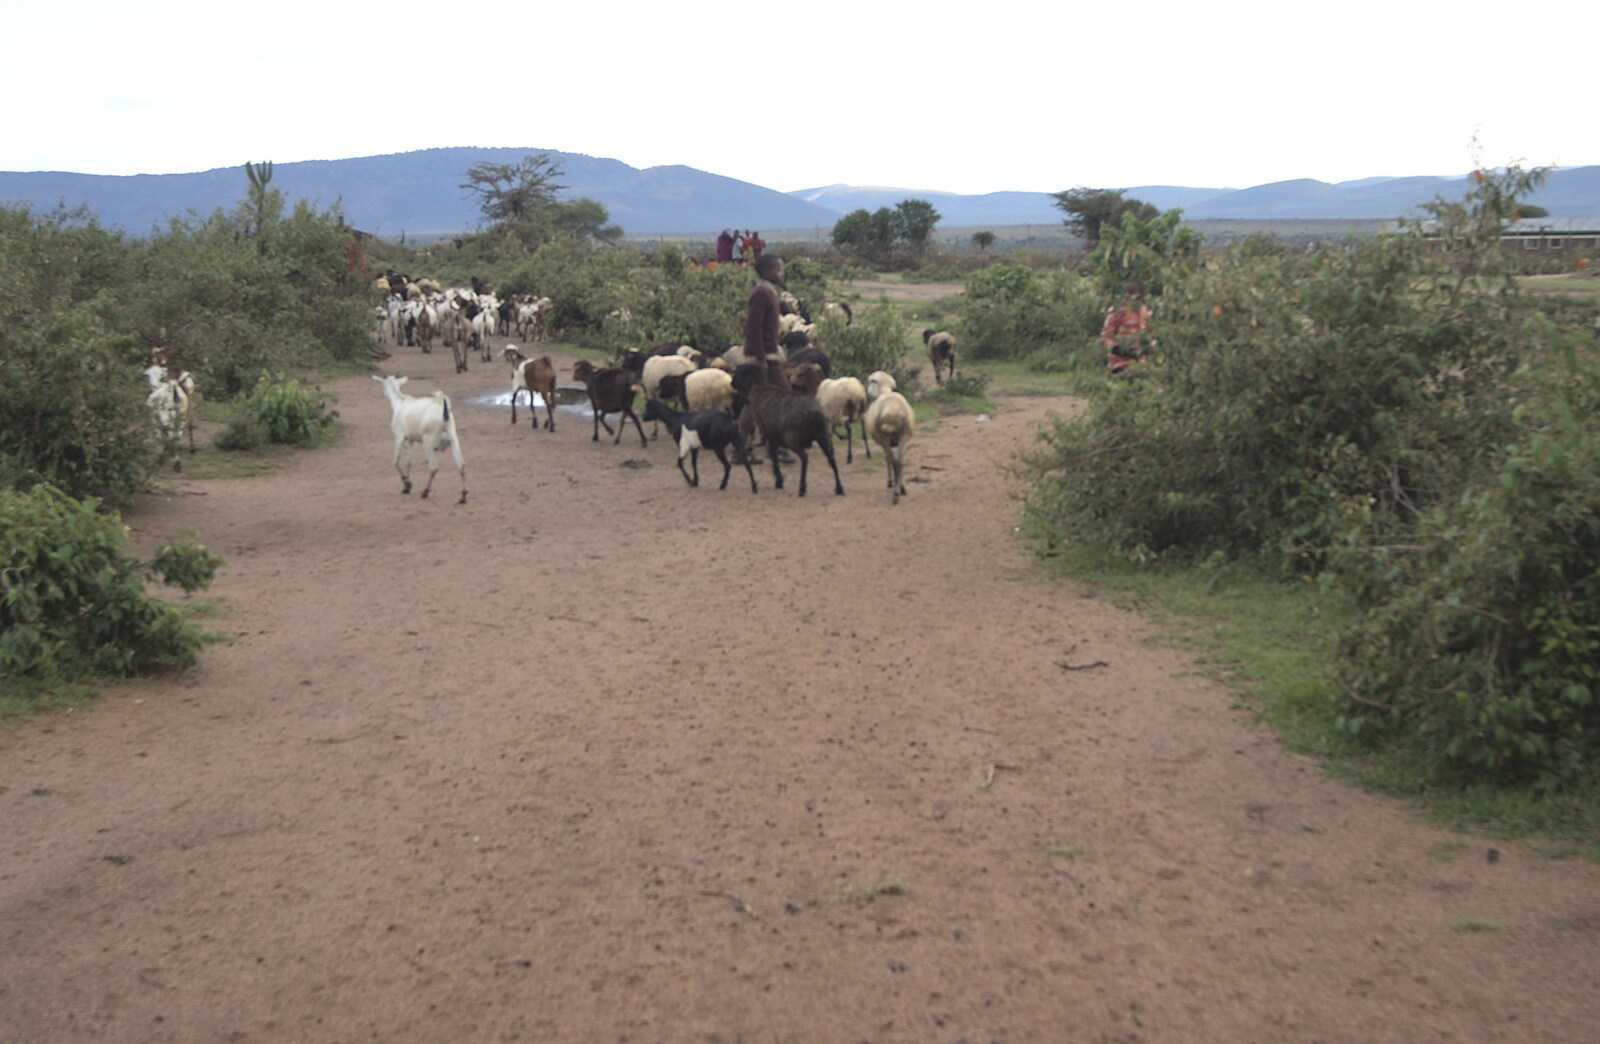 Maasai Mara Safari and a Maasai Village, Ololaimutia, Kenya - 5th November 2010: Goat herding